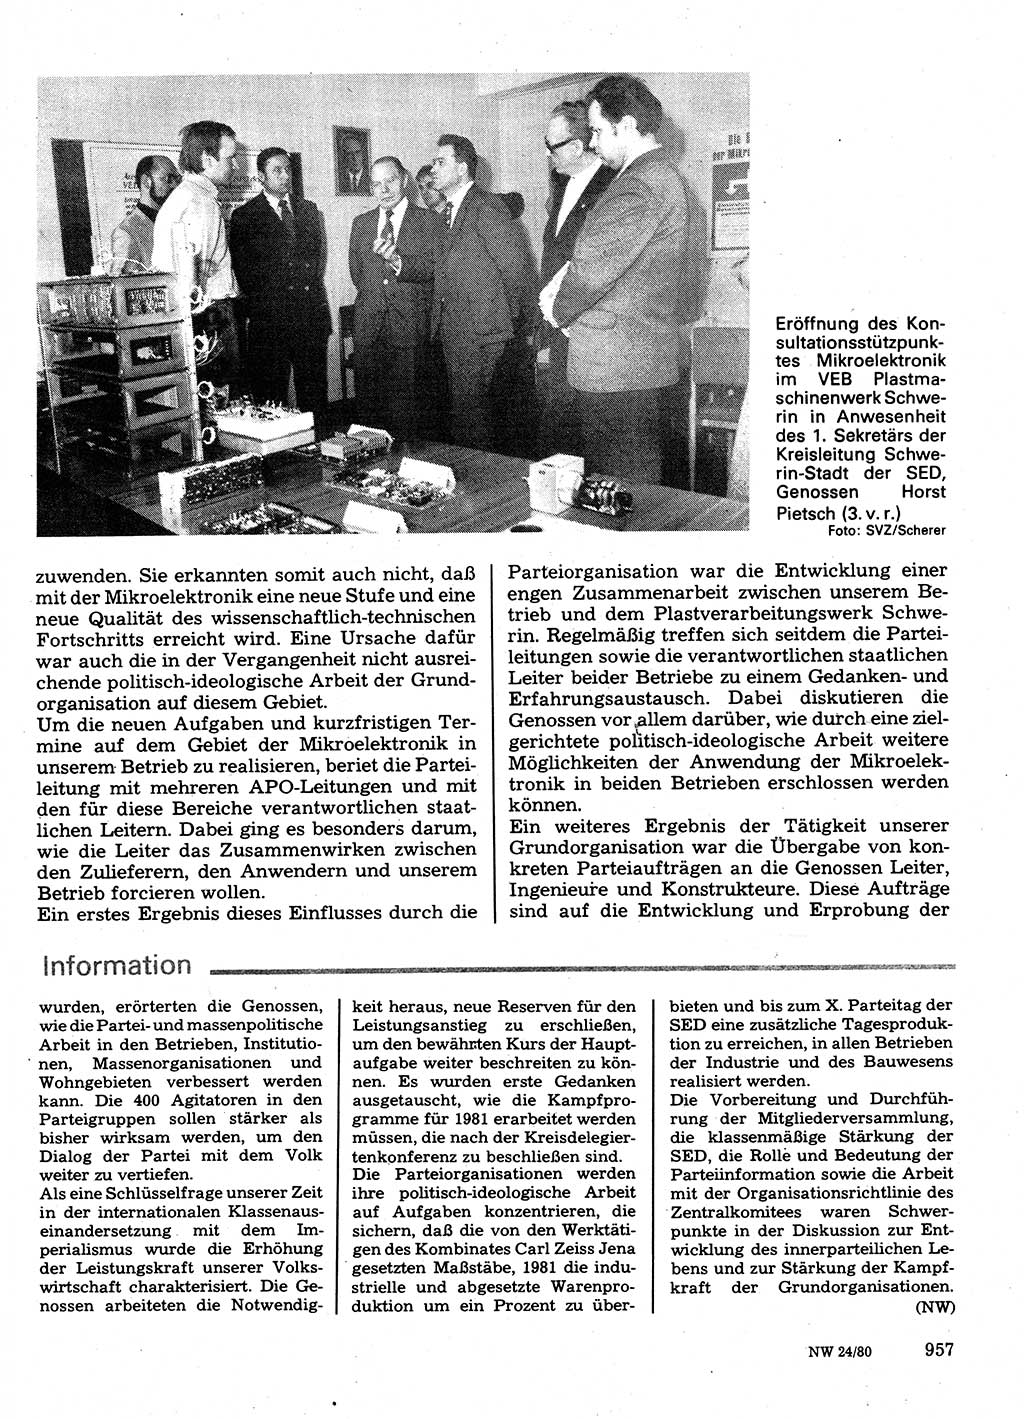 Neuer Weg (NW), Organ des Zentralkomitees (ZK) der SED (Sozialistische Einheitspartei Deutschlands) fÃ¼r Fragen des Parteilebens, 35. Jahrgang [Deutsche Demokratische Republik (DDR)] 1980, Seite 957 (NW ZK SED DDR 1980, S. 957)